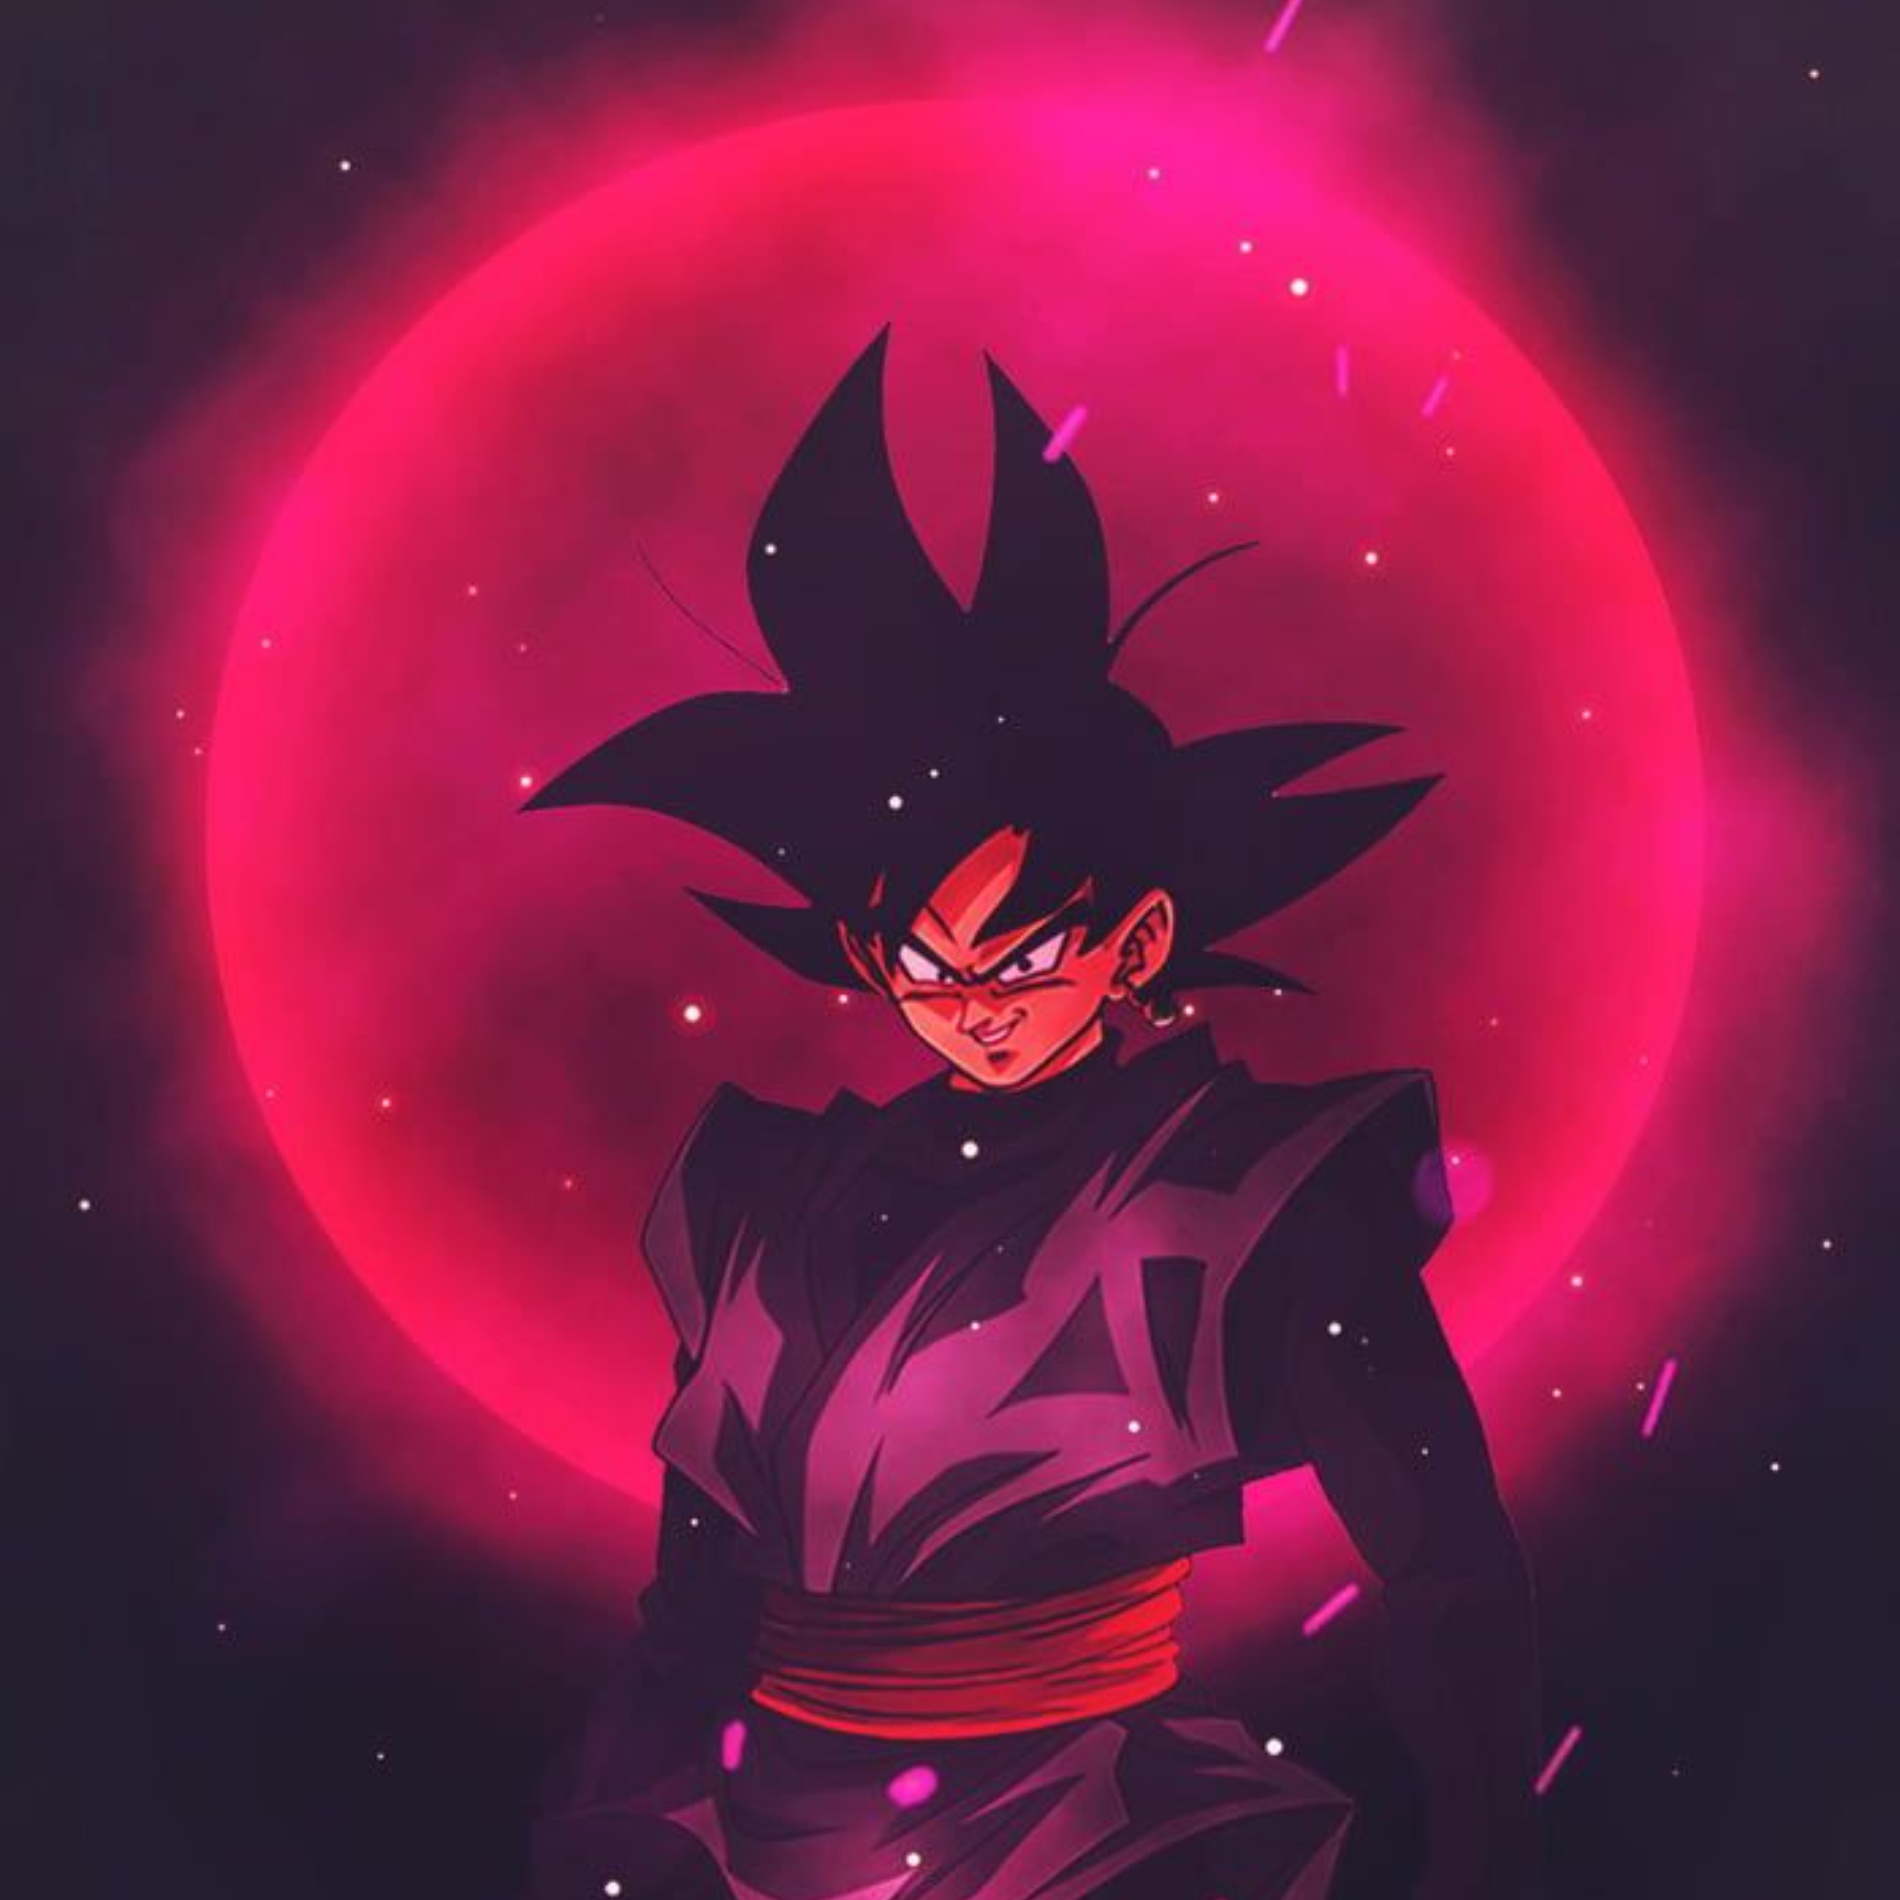 Aesthetic Goku Black pfp